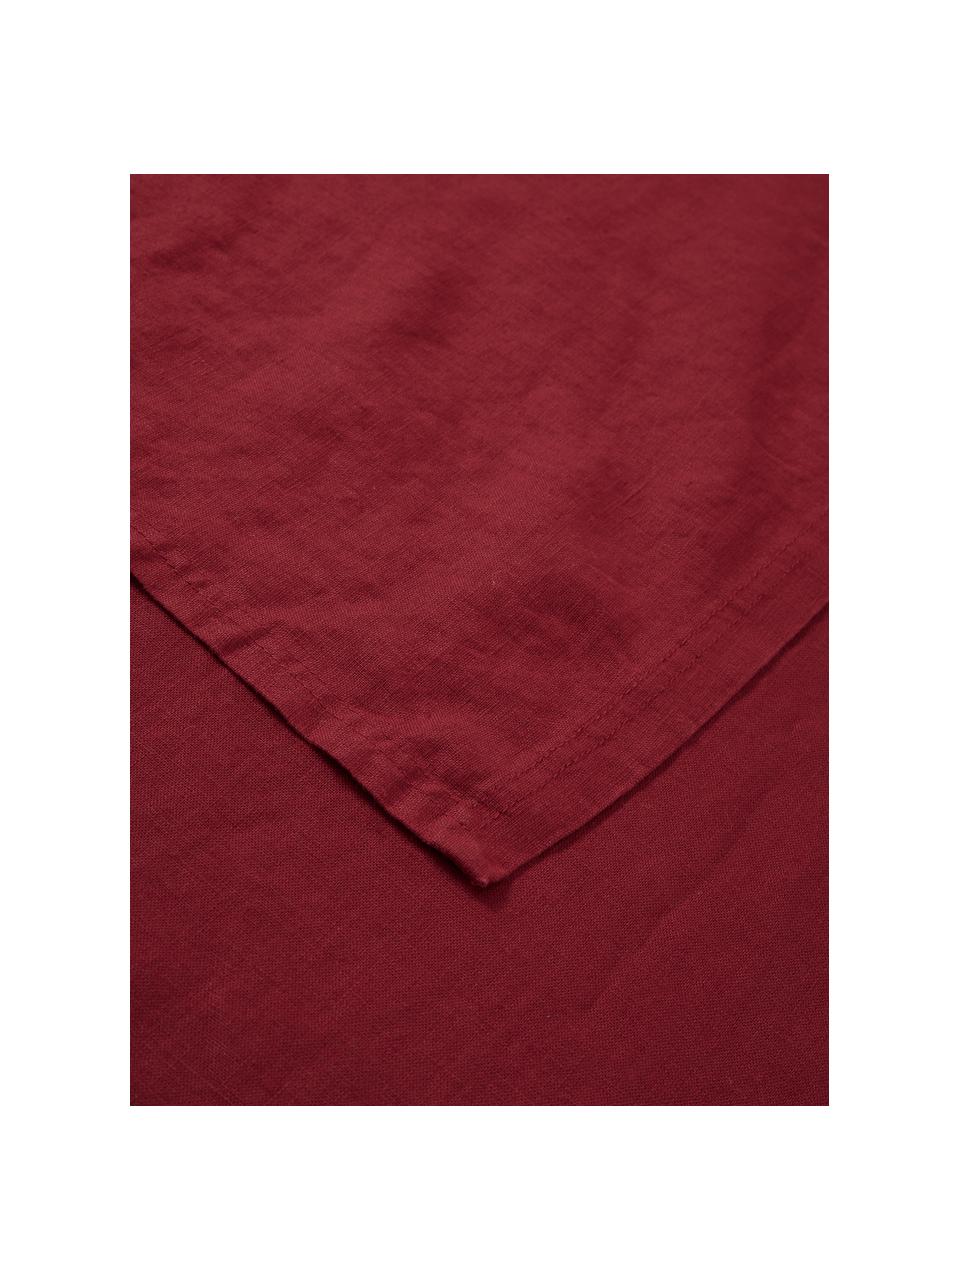 Chemin de table pur lin Pembroke, 100 % pur lin, Rouge, larg. 40 x long. 150 cm